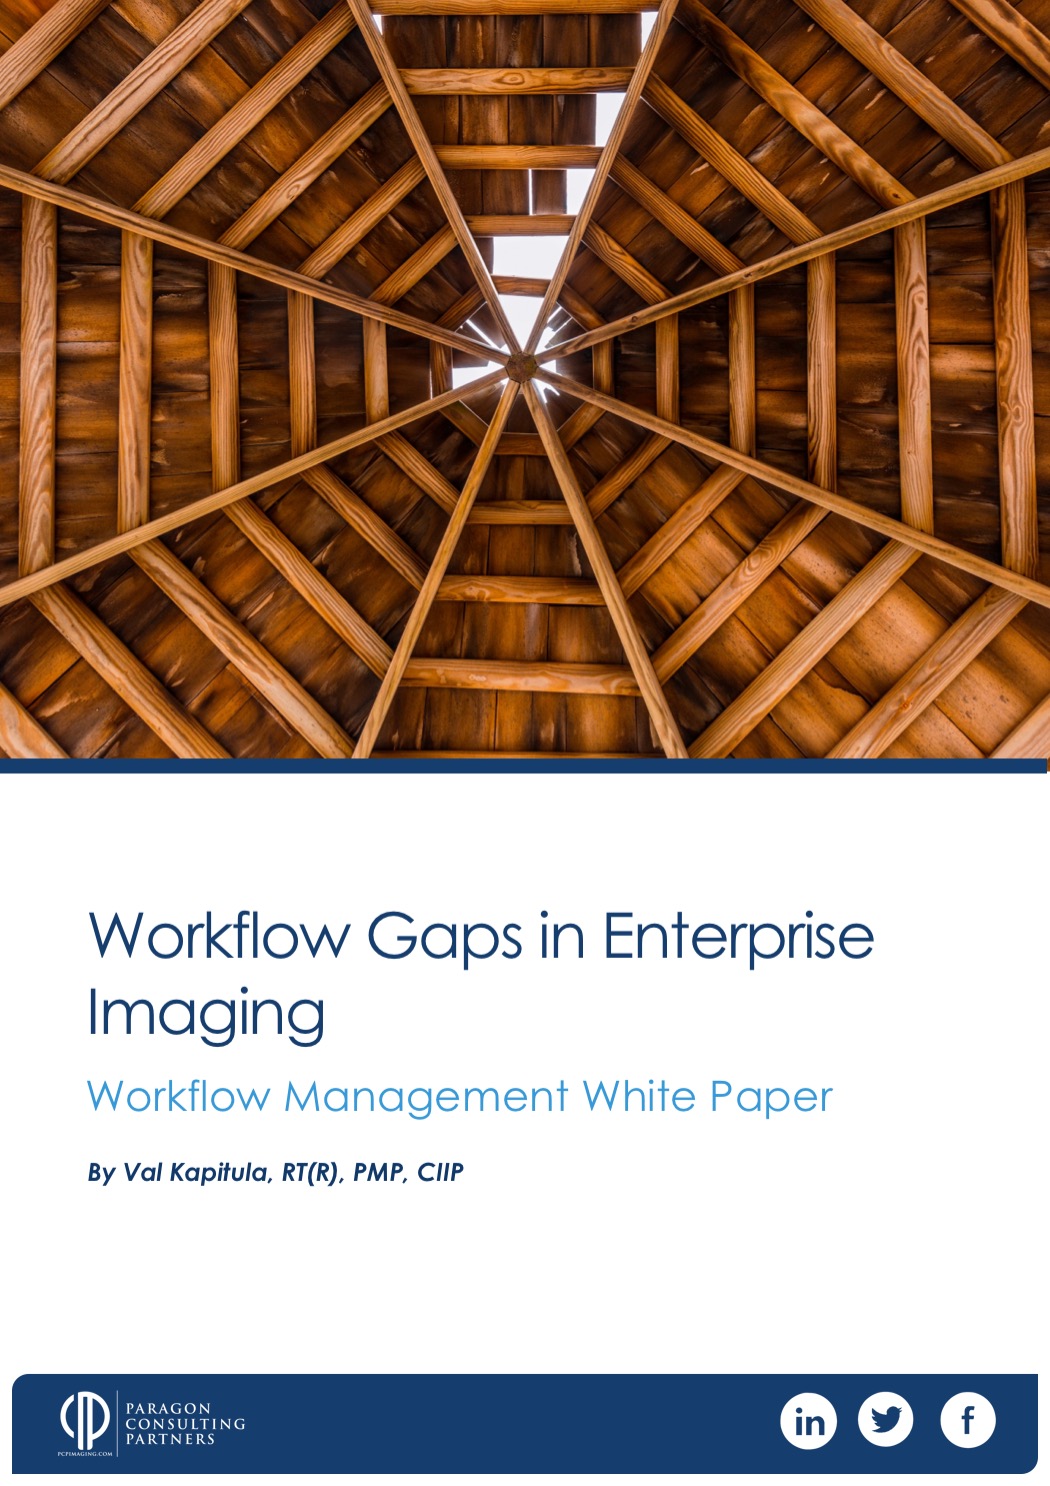 Workflow Gaps in Enterprise Imaging White Paper